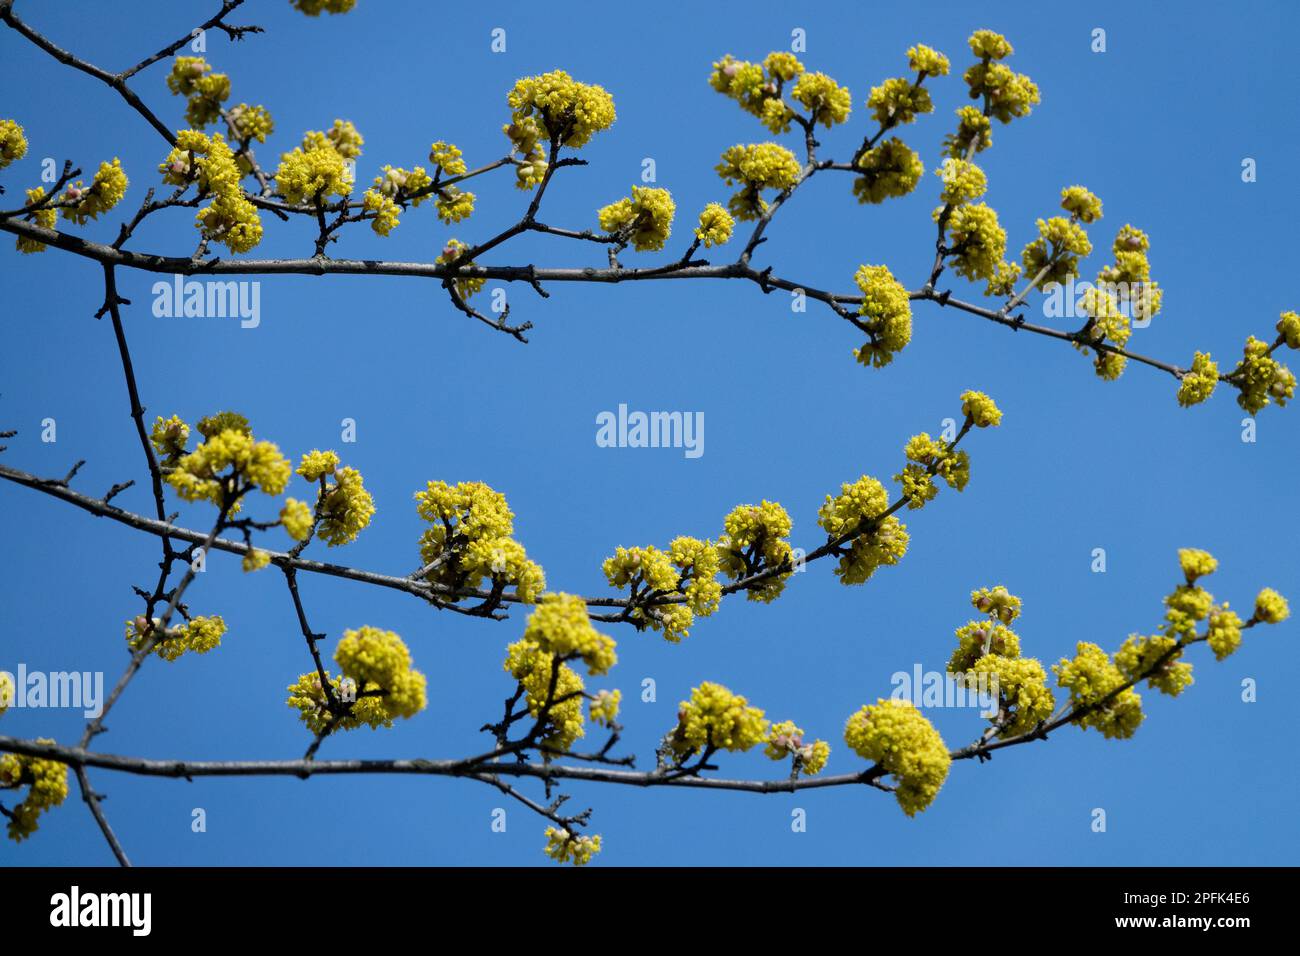 Cerise cornéenne, Mas Cornus petits amas de petites fleurs jaunes vives sur les branches fleurissent d'abord au début du printemps Banque D'Images